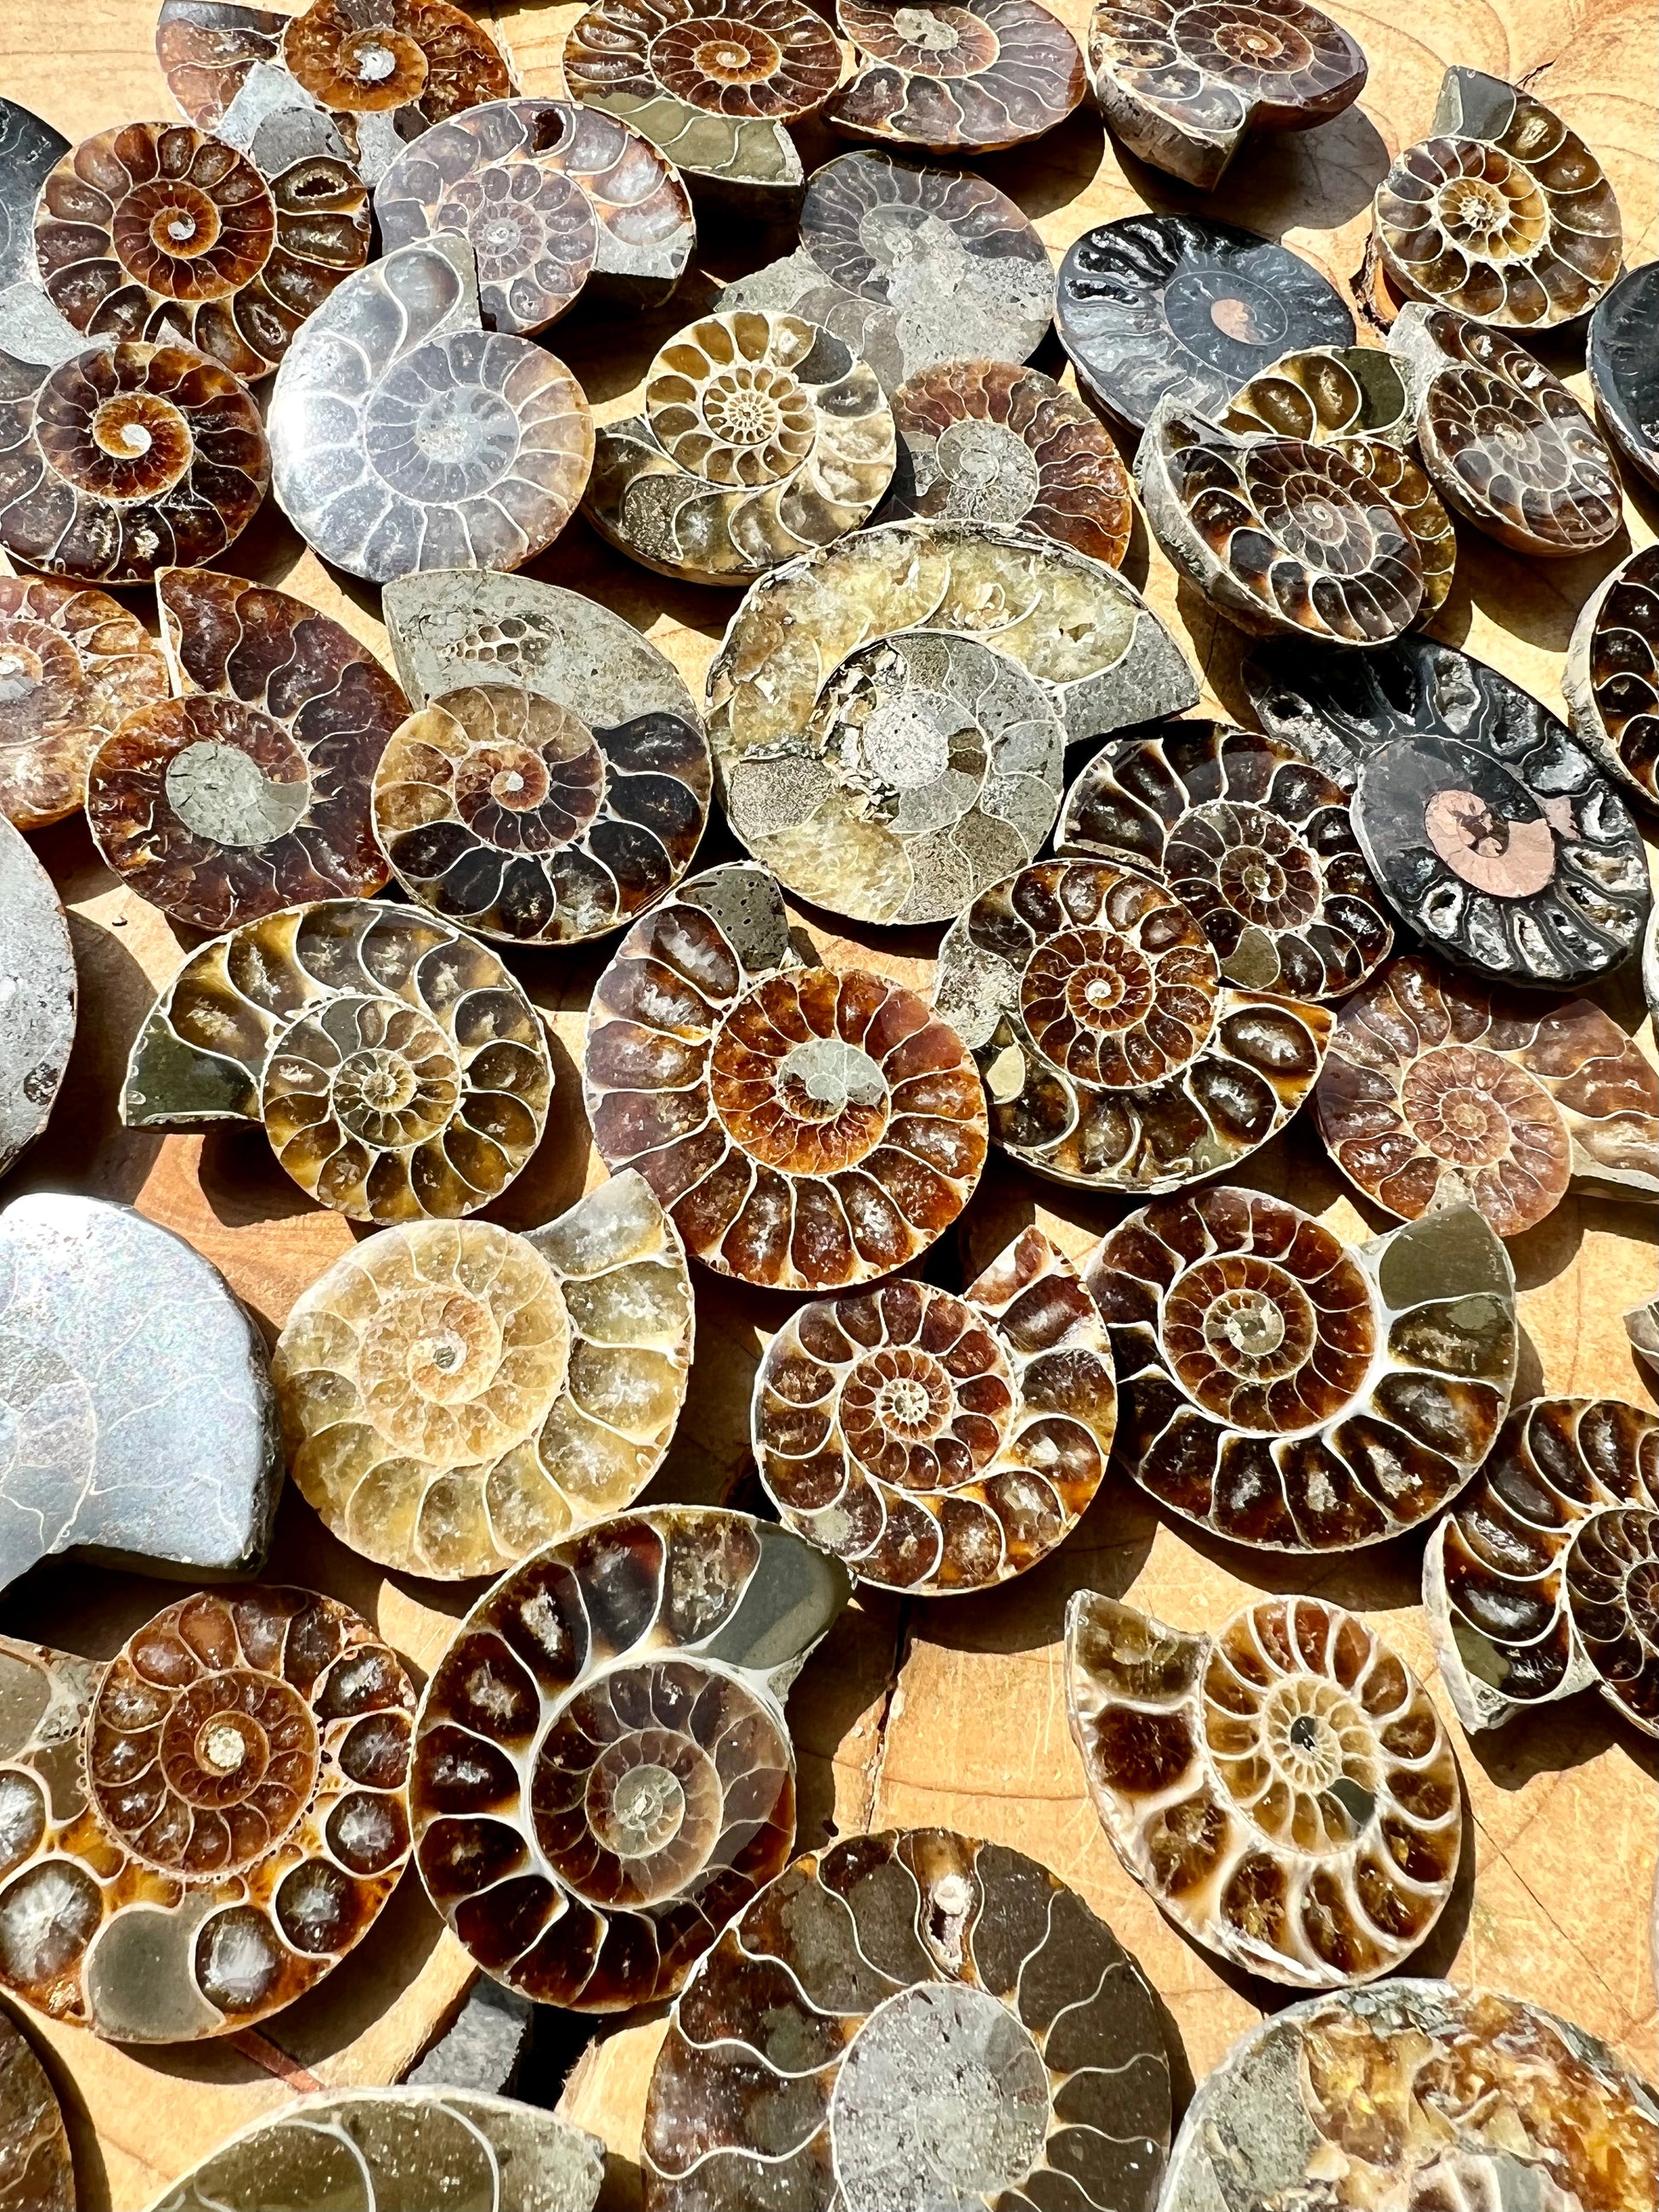 Cut & Polished Ammonite Fossils